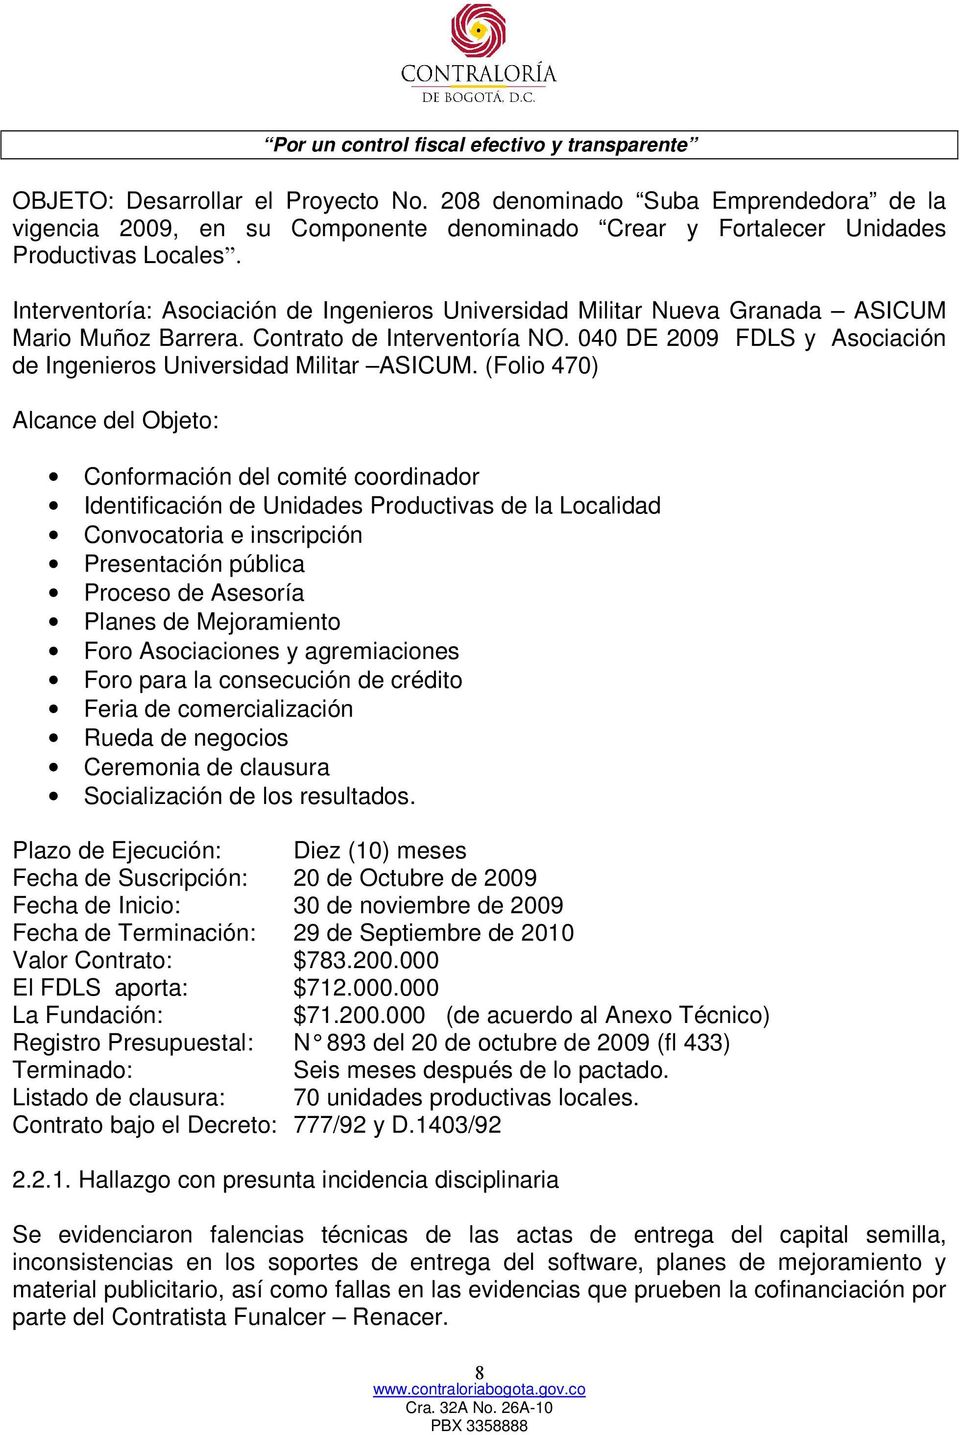 040 DE 2009 FDLS y Asociación de Ingenieros Universidad Militar ASICUM.